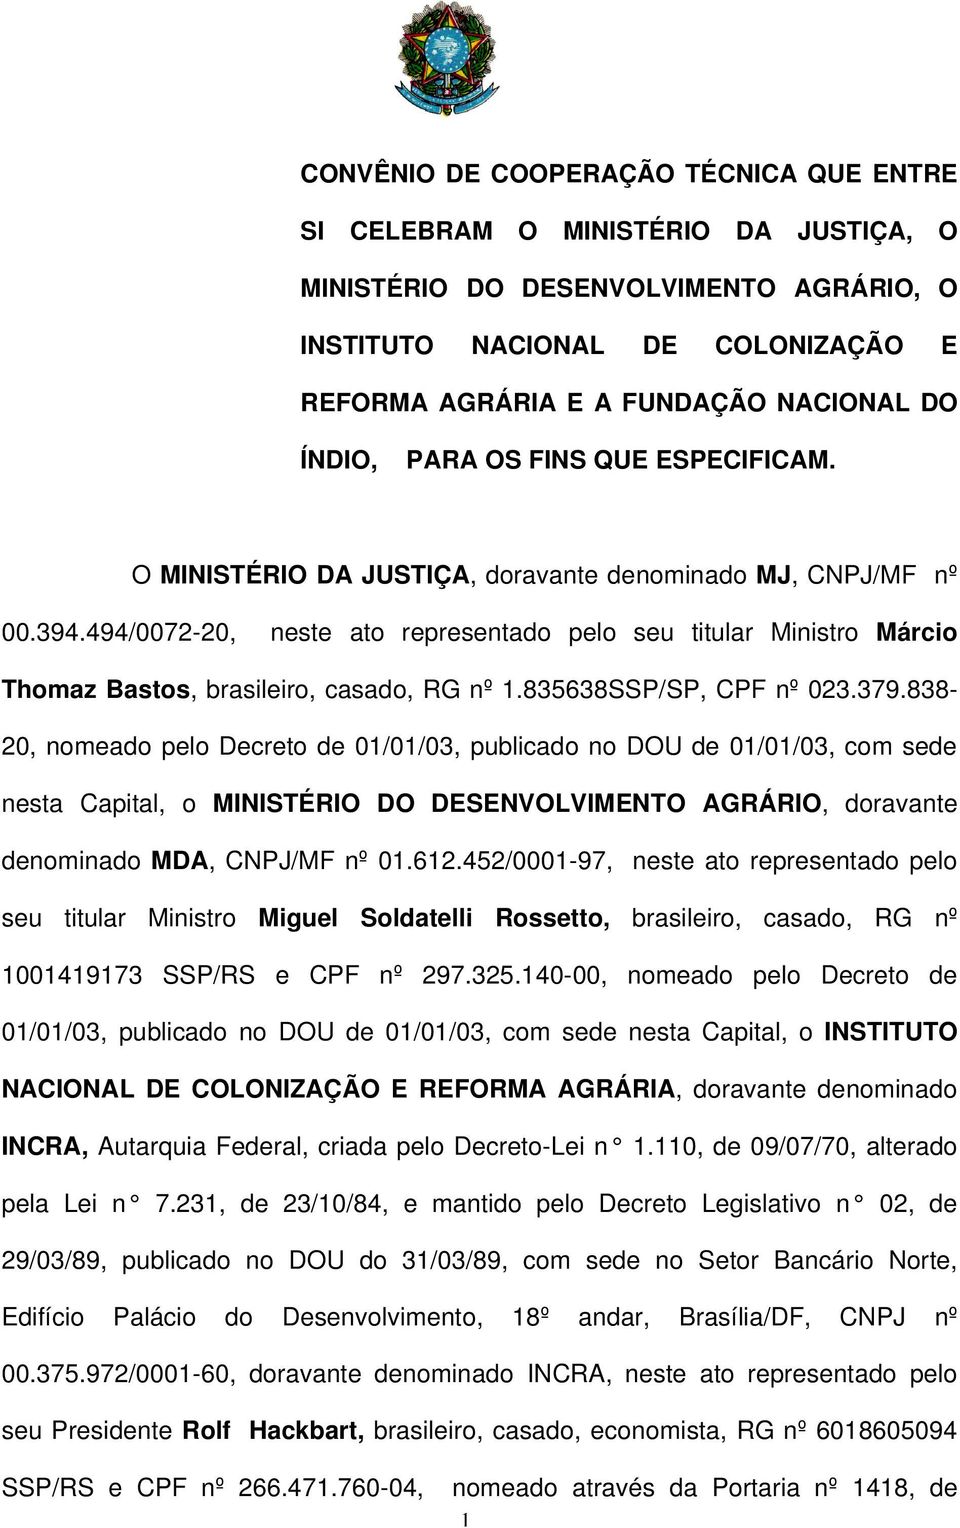 494/0072-20, neste ato representado pelo seu titular Ministro Márcio Thomaz Bastos, brasileiro, casado, RG nº 1.835638SSP/SP, CPF nº 023.379.